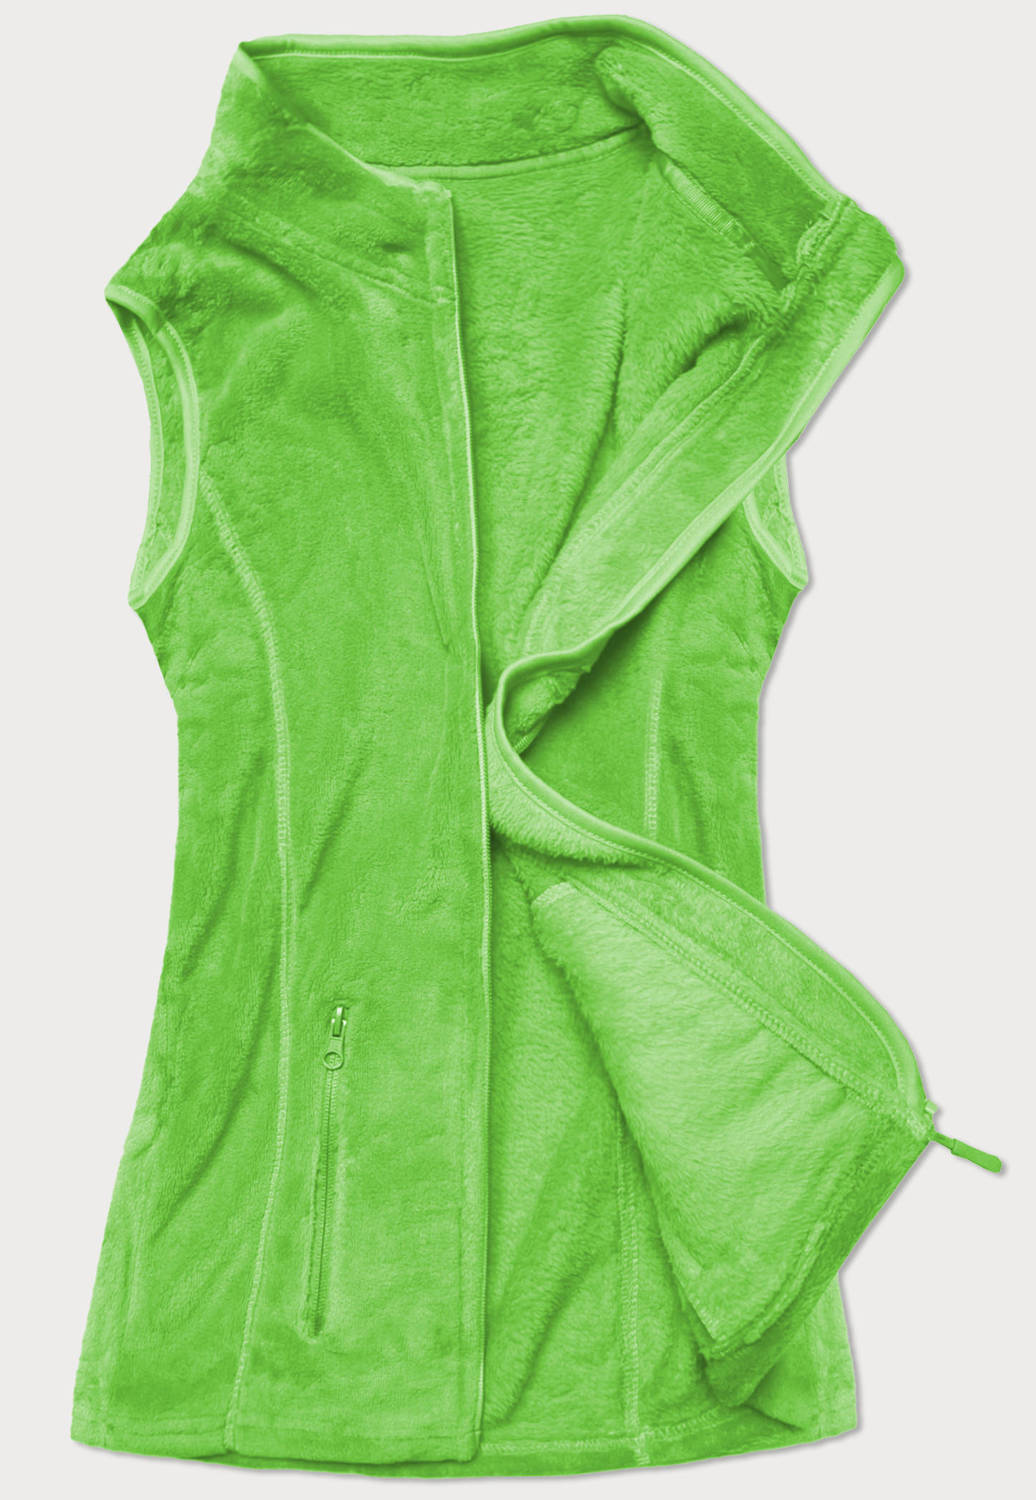 Pluszowa kamizelka damska zielona neonowa (HH003-44)